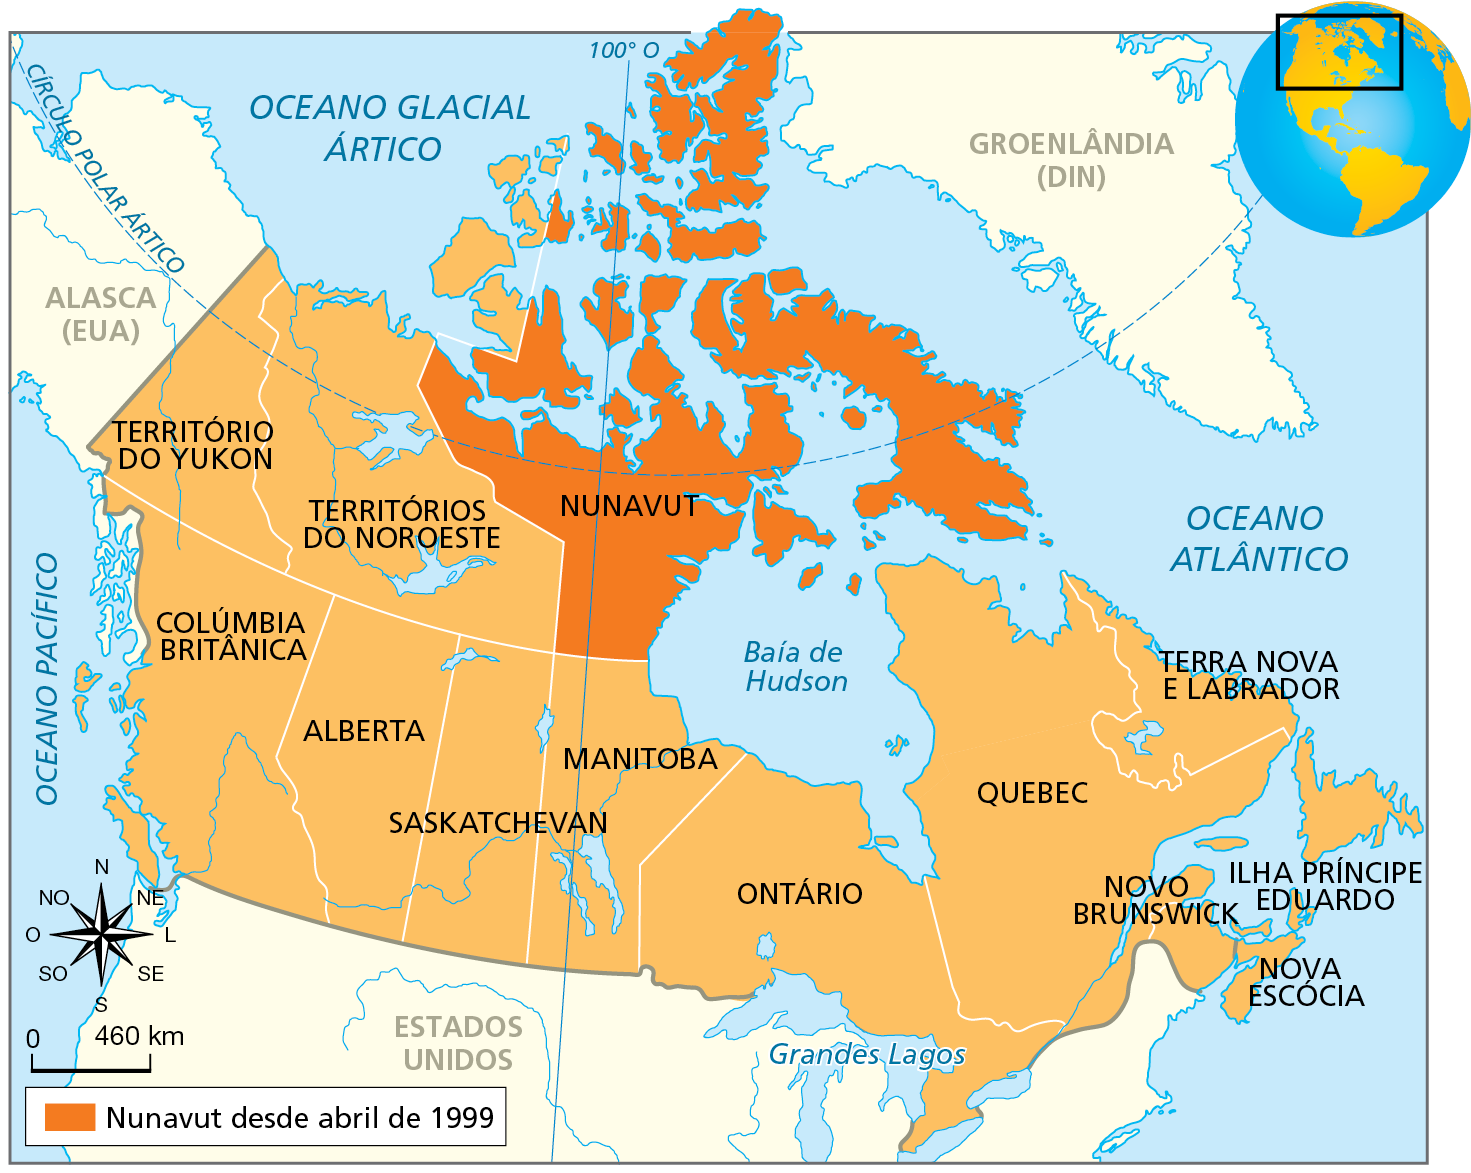 Mapa. Canadá e o território Nuvanut - 2019. Mapa do território do Canadá com seus estados representados. Na porção norte do Canadá, na faixa de terras adjacentes aos Círculo Polar Ártico, encontra-se os seguintes territórios, de oeste para leste: Territórios do Yukon, Territórios do Noroeste e Nunavut, em destaque de laranja escuro, com a seguinte informação na legenda: Nunavut desde abril de 1999. A leste de Nunavut, a Baía de Hudson. Na porção sul do Canadá, encontra-se os estados que fazem fronteira com os Estados Unidos, de oeste para leste: Colúmbia Britânica, Alberta, Saskatchevan, Manitoba, Ontário, Quebec, Terra Nova e Labrador, Novo Brunswick, Nova Escócia, Ilha Príncipe Eduardo.
Na parte de baixo, à esquerda, rosa dos ventos e escala de 0 460 quilômetros.